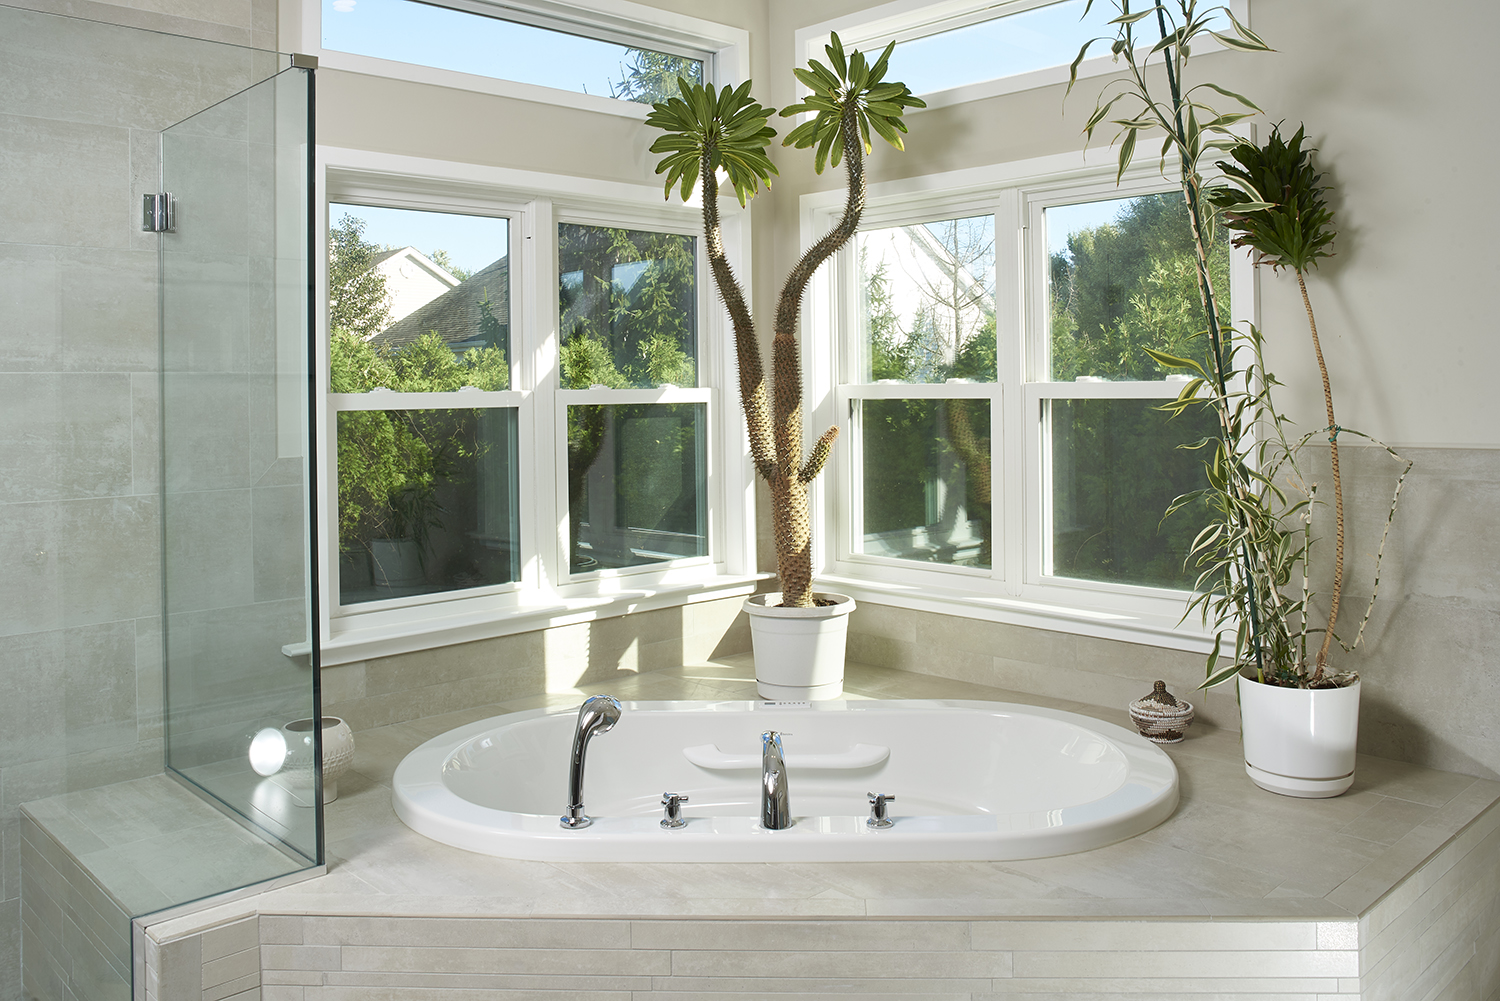 bathtub by windows.jpg